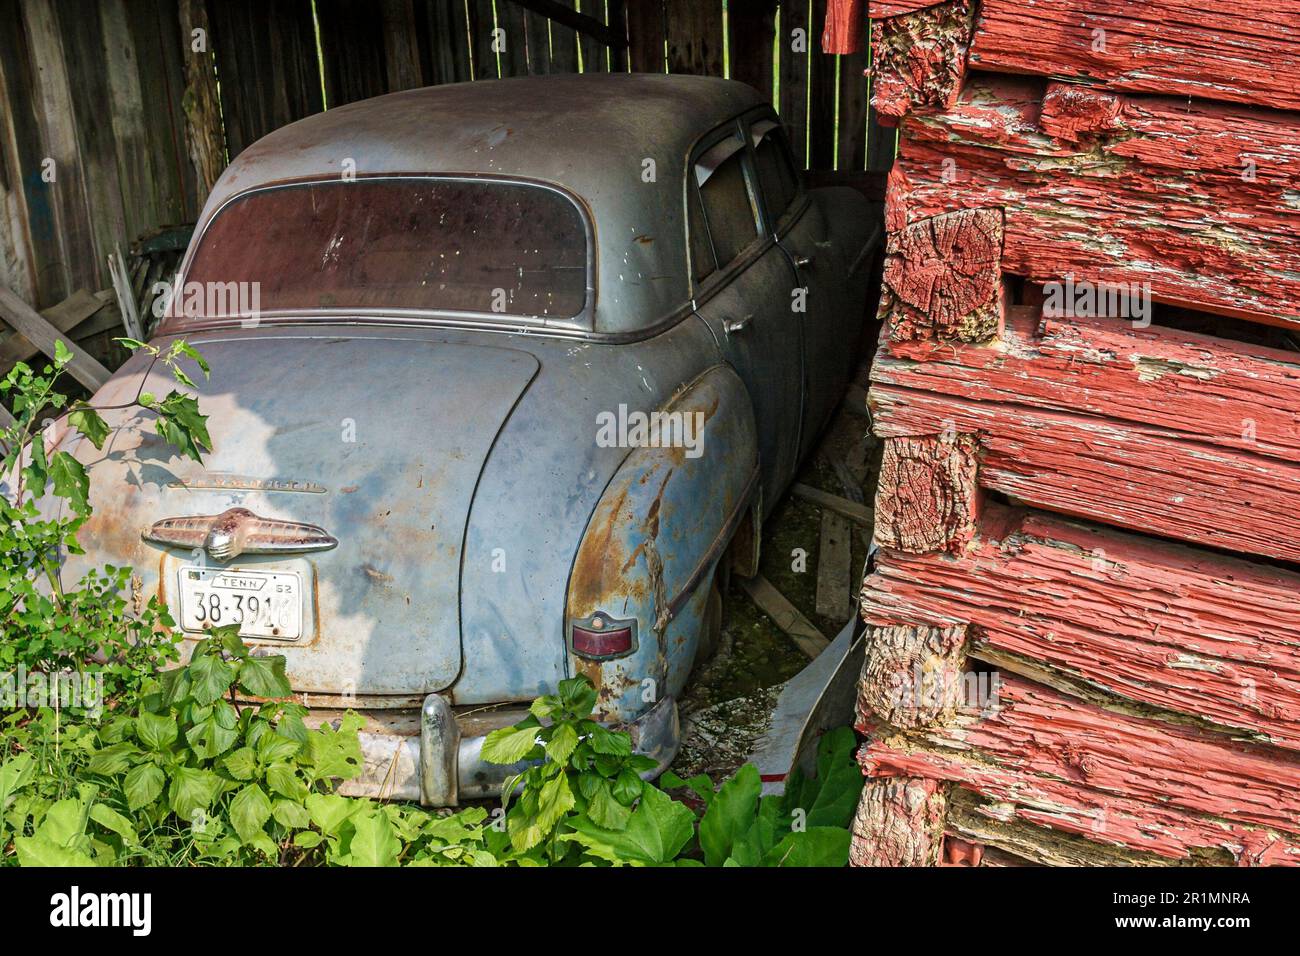 Sevierville Tennessee, grange rouge rural style de vie pays rustique, ancienne vieille voiture Banque D'Images